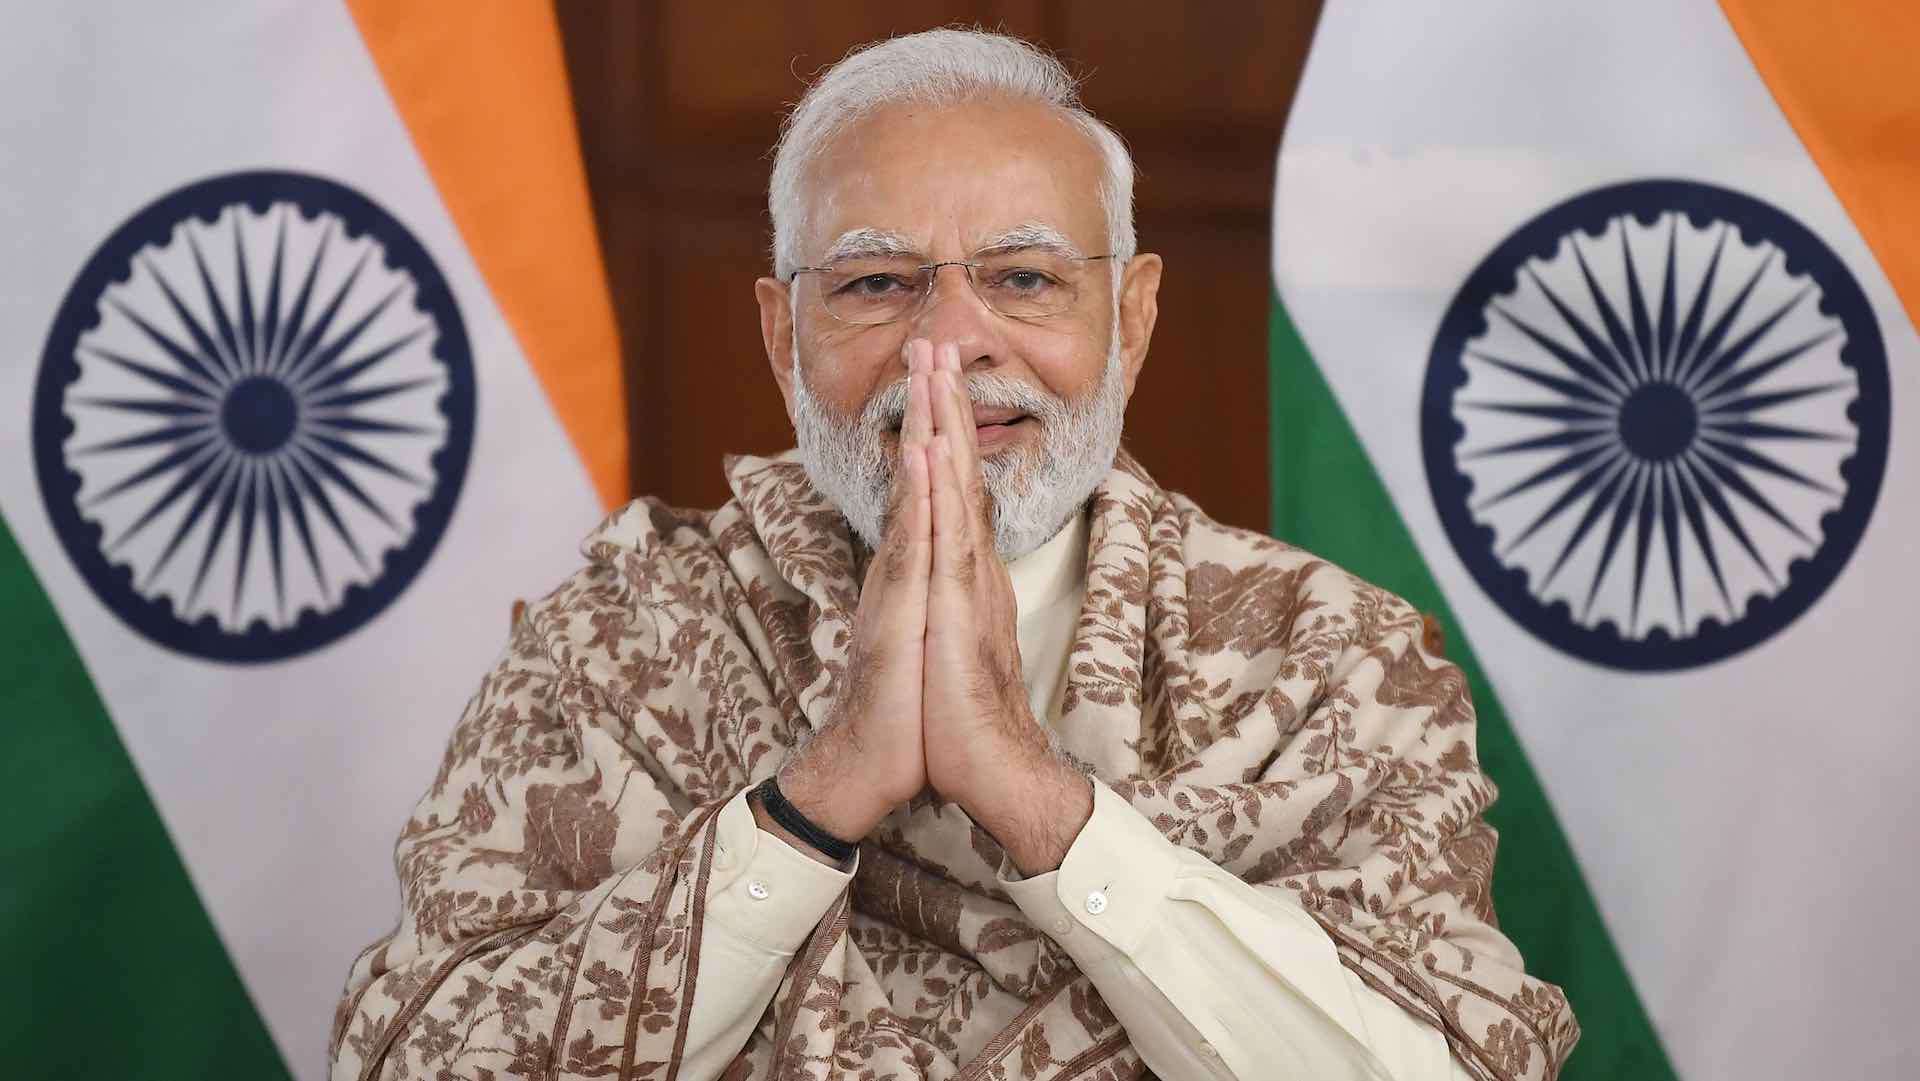 رئيس وزراء الهند الهند يستهل اجتماع العشرين G20 بدعوة لإصلاح المؤسسات الدولية